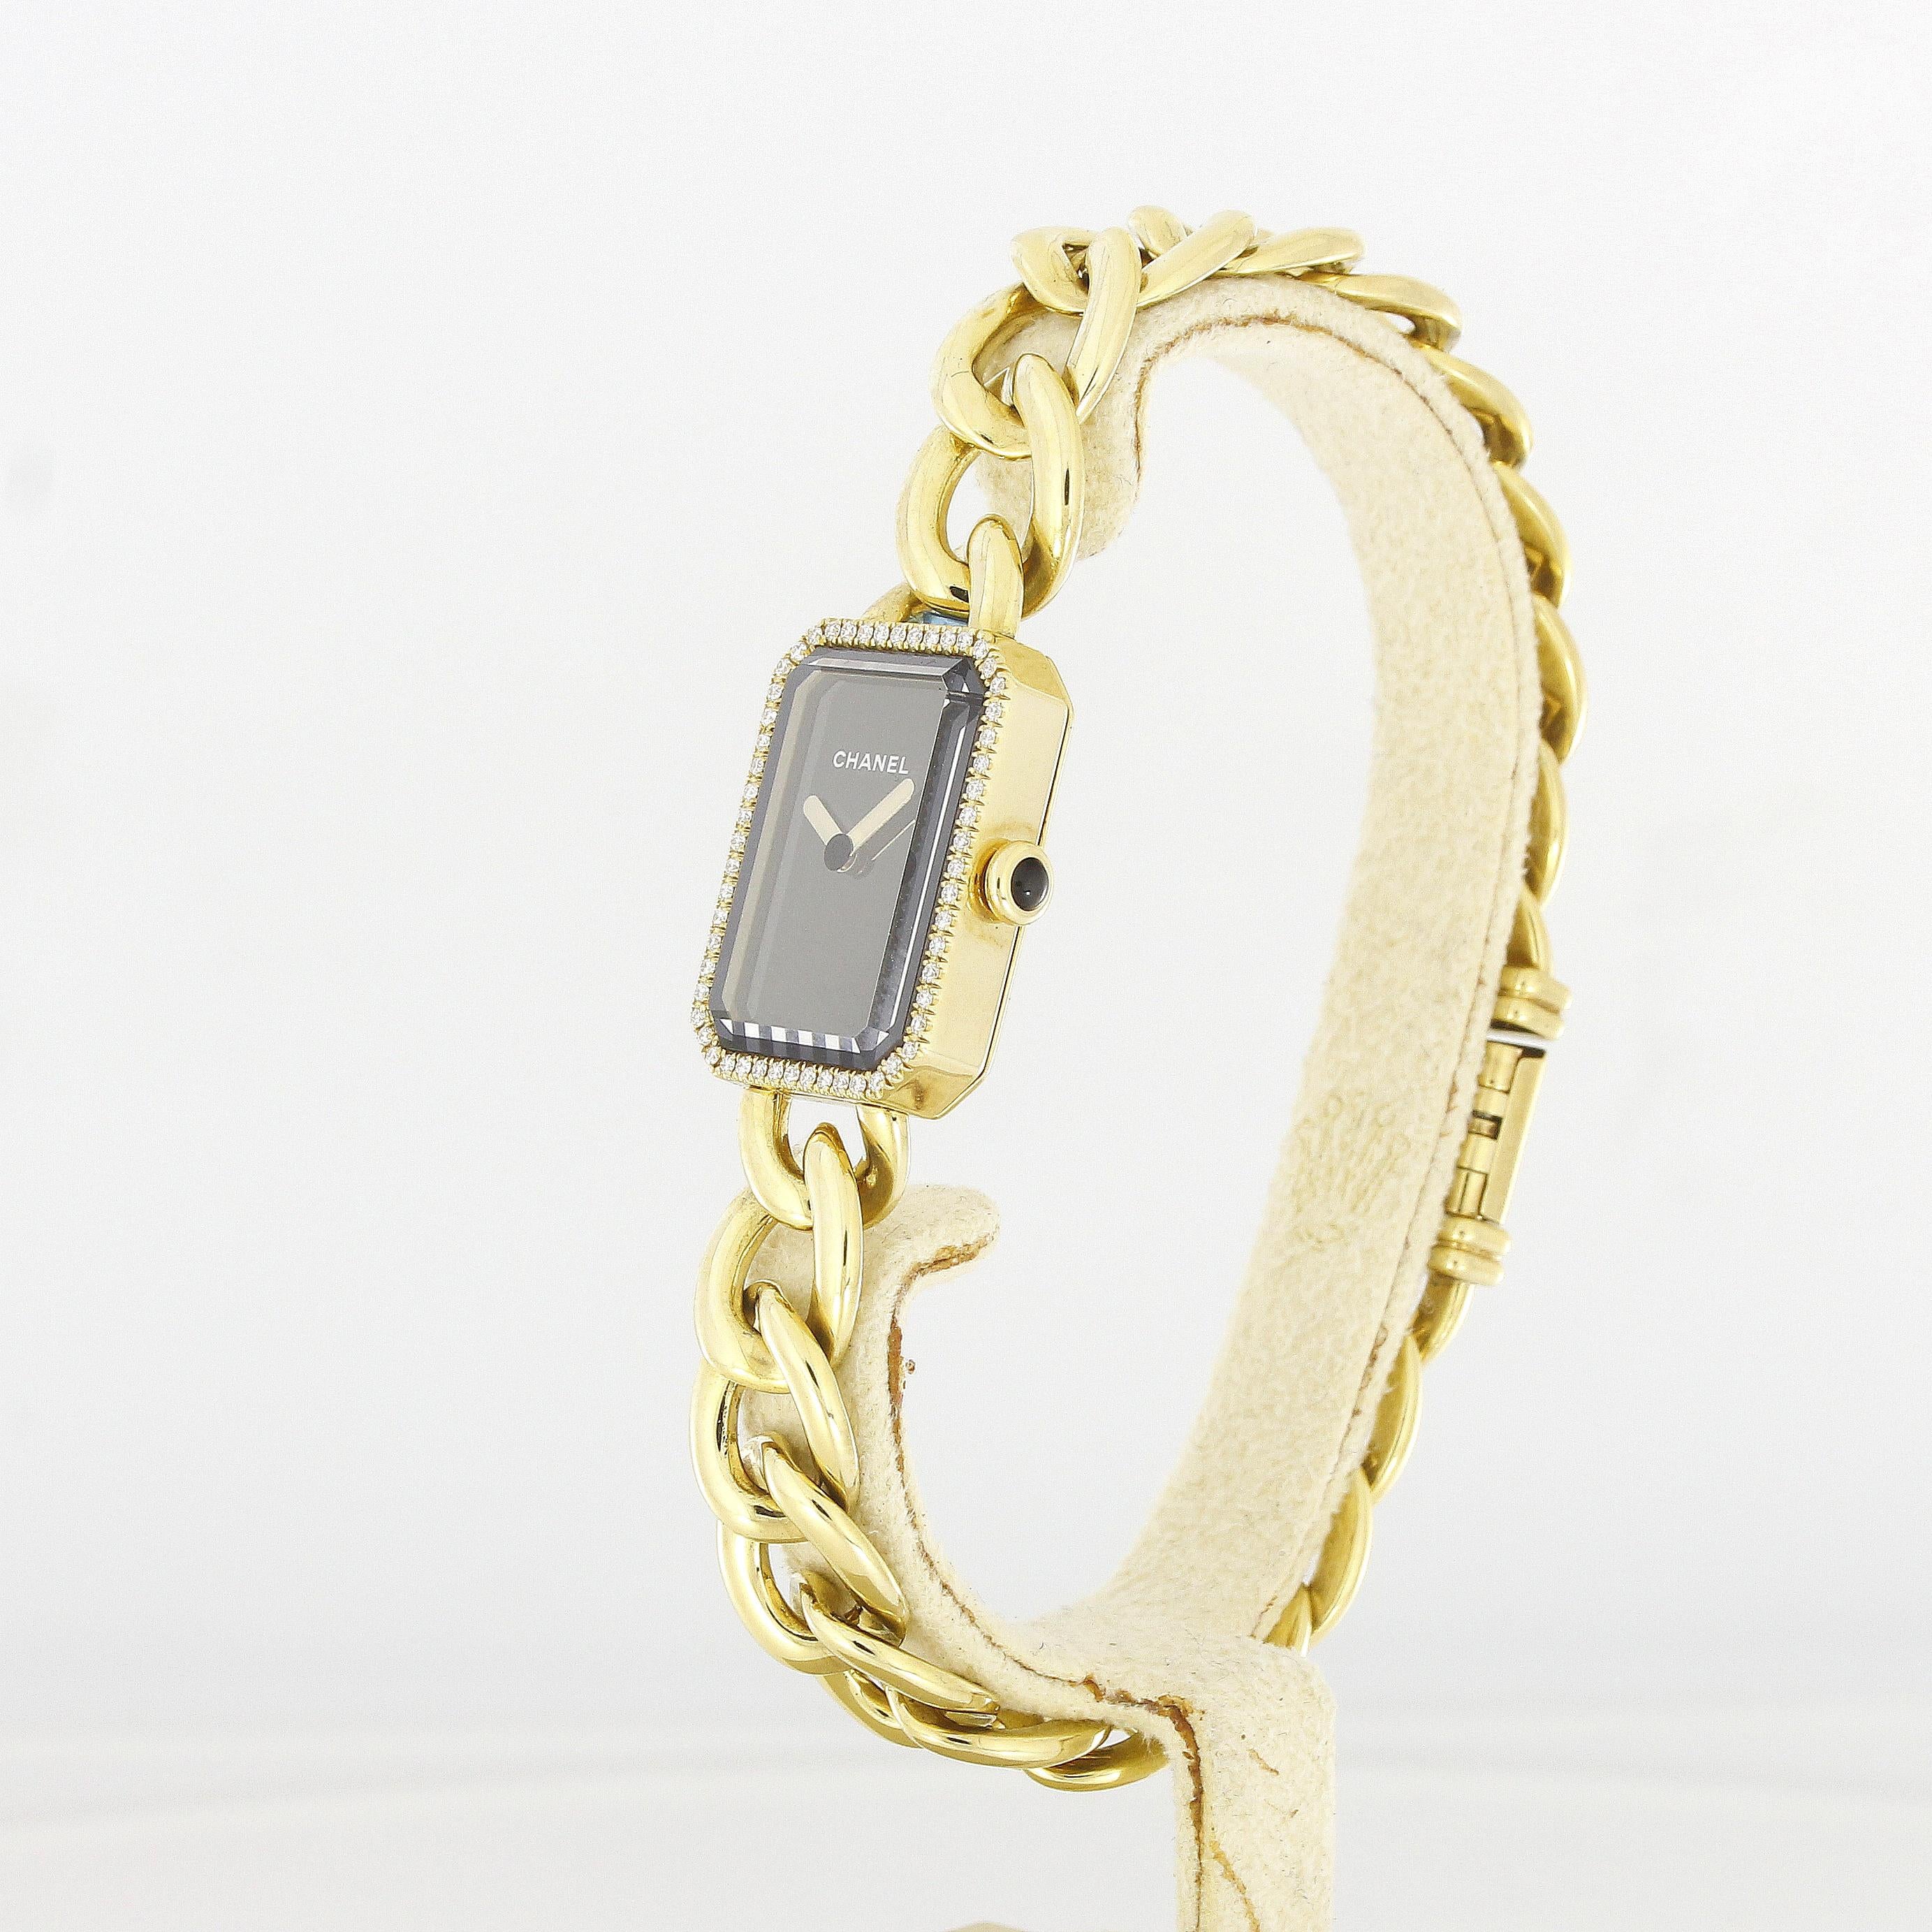 Chanel Première Damen-Armbanduhr Gelbgold Diamanten

Referenz: H3258
MATERIAL: 18k Gelbgold
Uhrwerk: Quarz
Abmessungen: 22 x 16 x 6,2 mm
Zifferblatt: Schwarz
Armband: 18k Gelbgold
Zubehör: Box & Original-Zertifikat von 2022